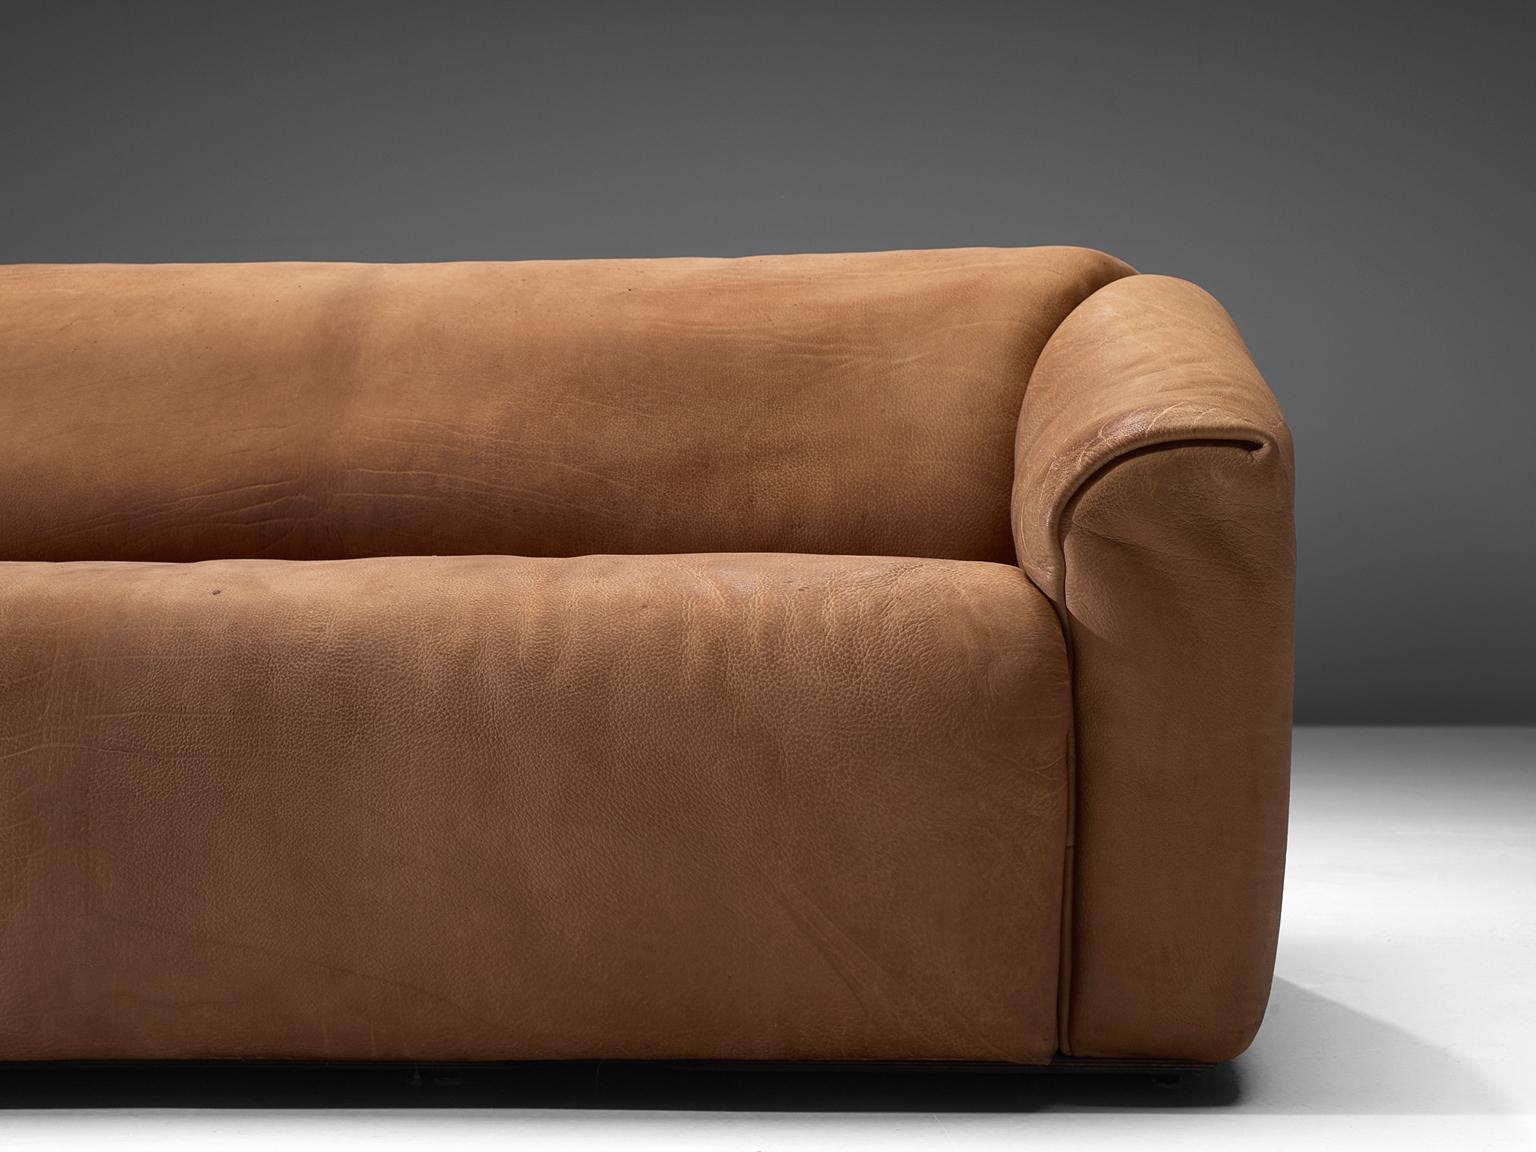 Swiss De Sede DS-47 Sofa in Cognac Leather